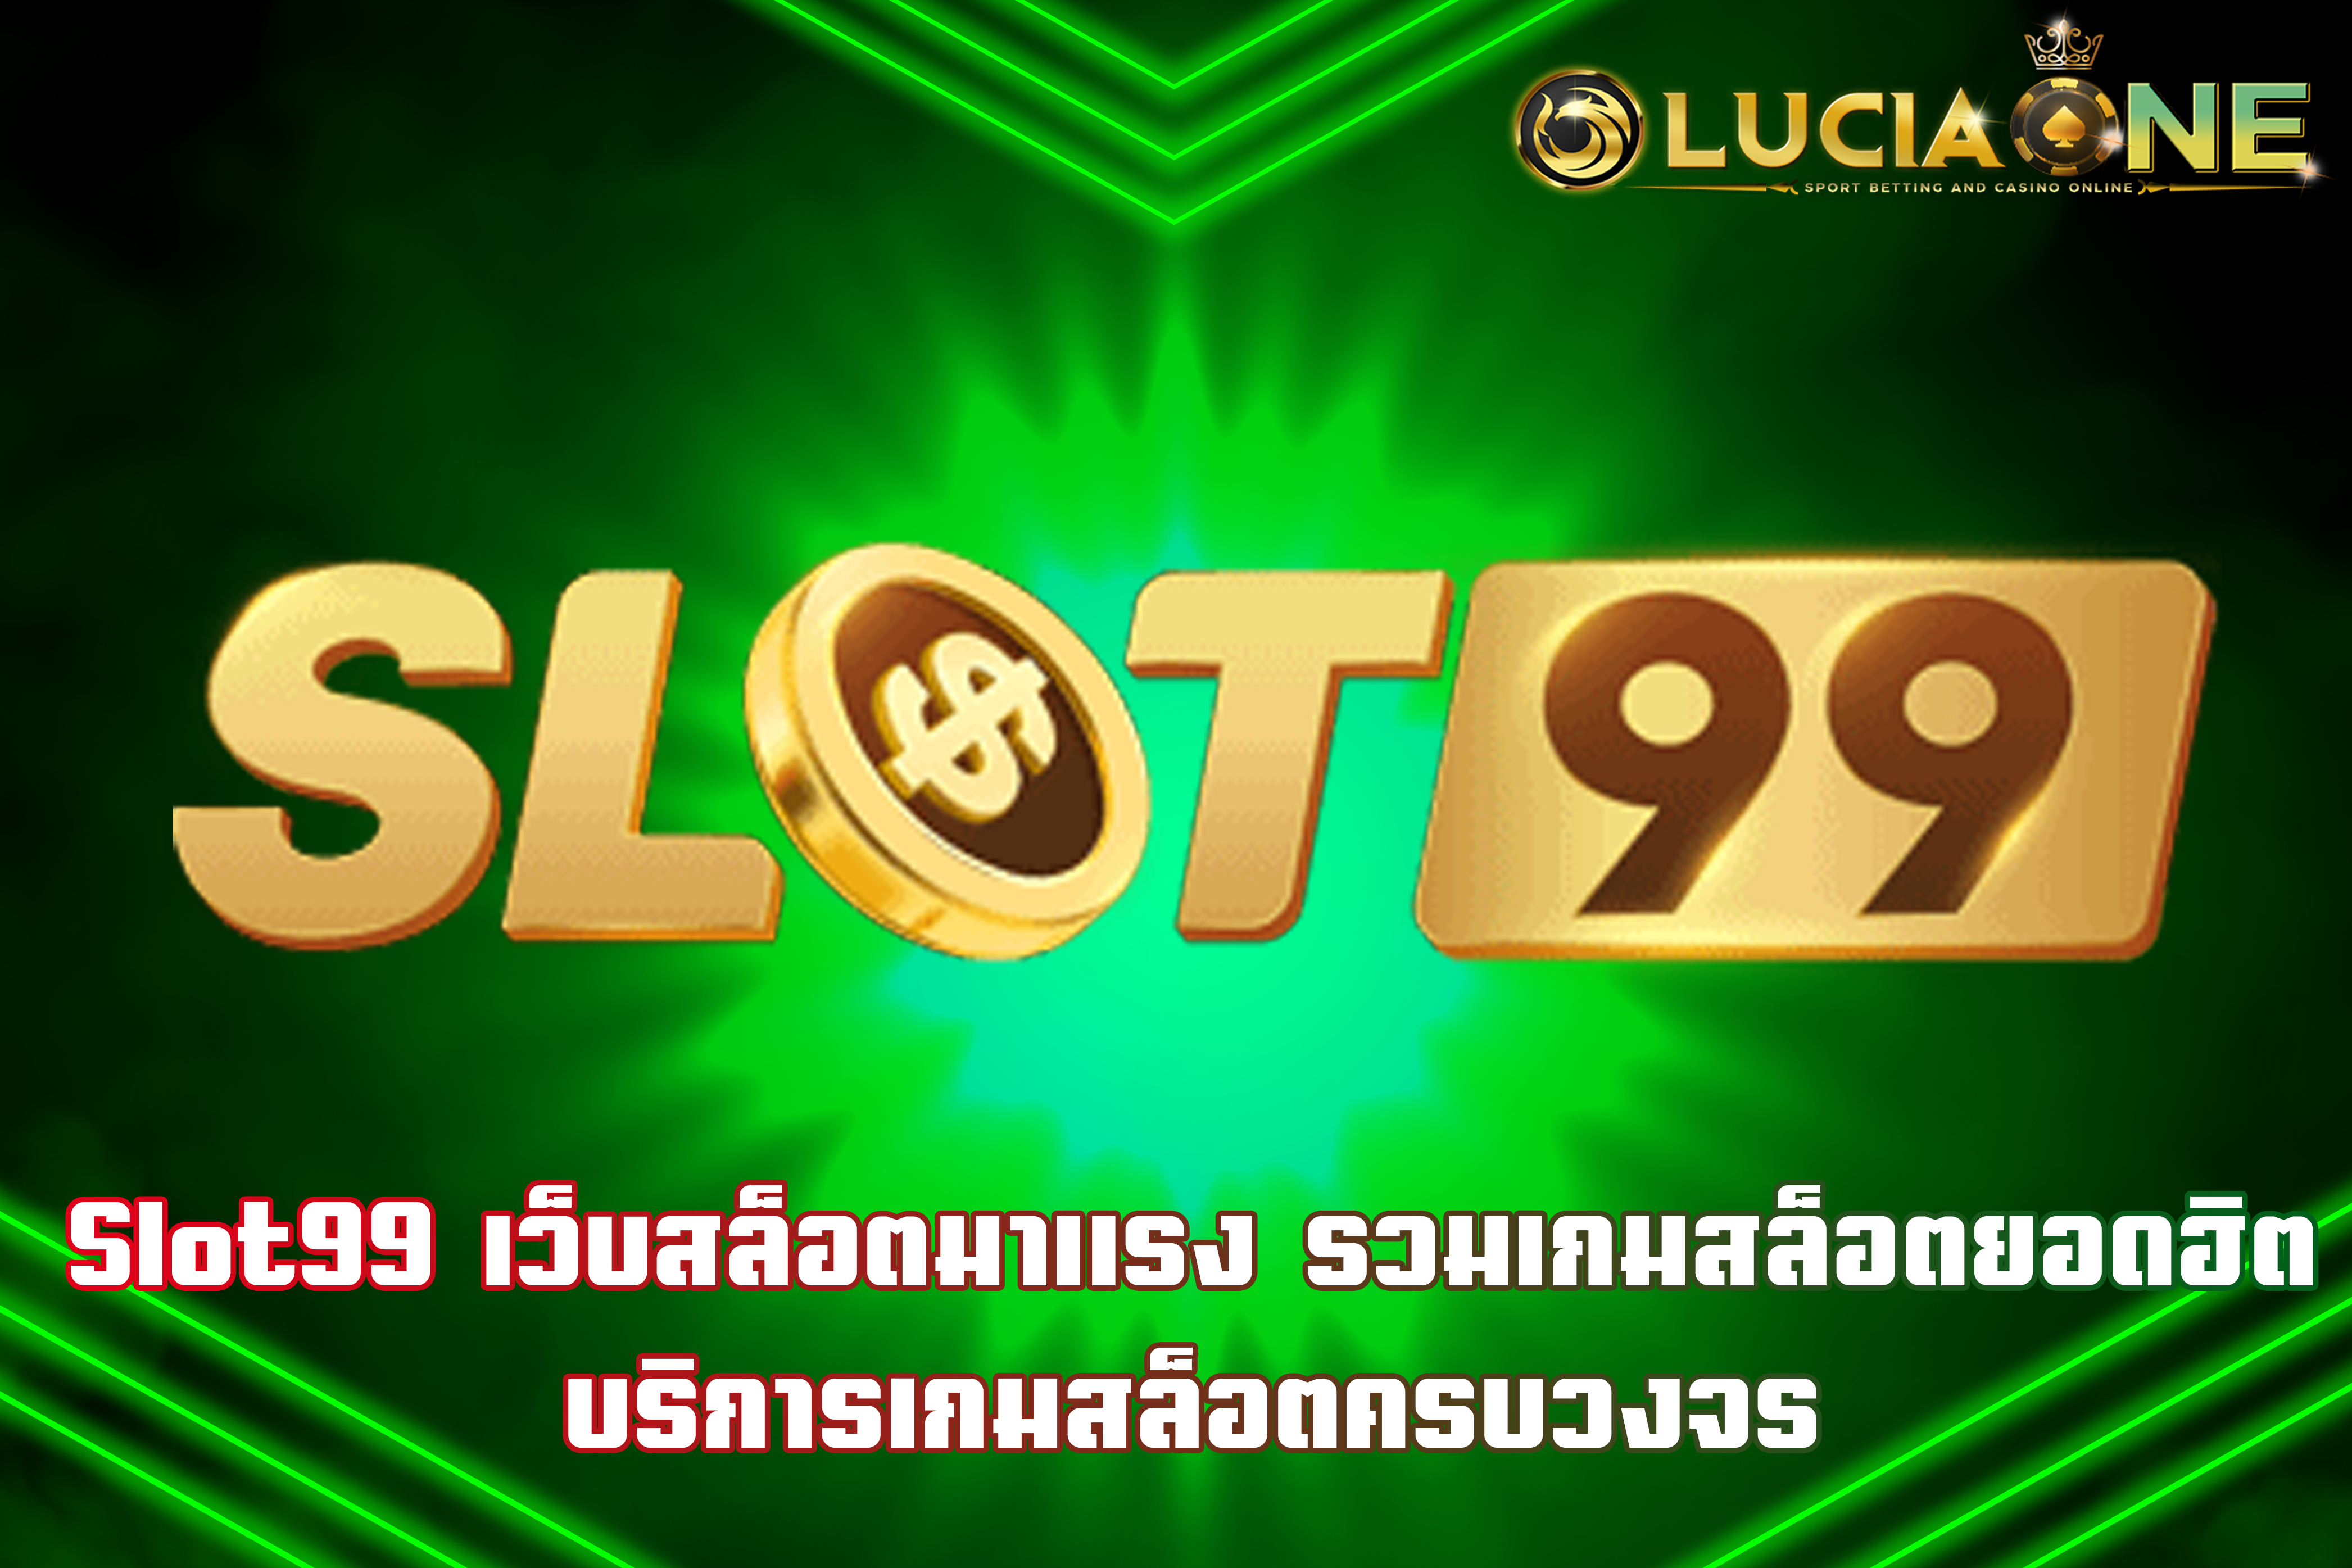 Slot99 เว็บสล็อตมาแรง รวมเกมสล็อตยอดฮิต บริการเกมสล็อตครบวงจร